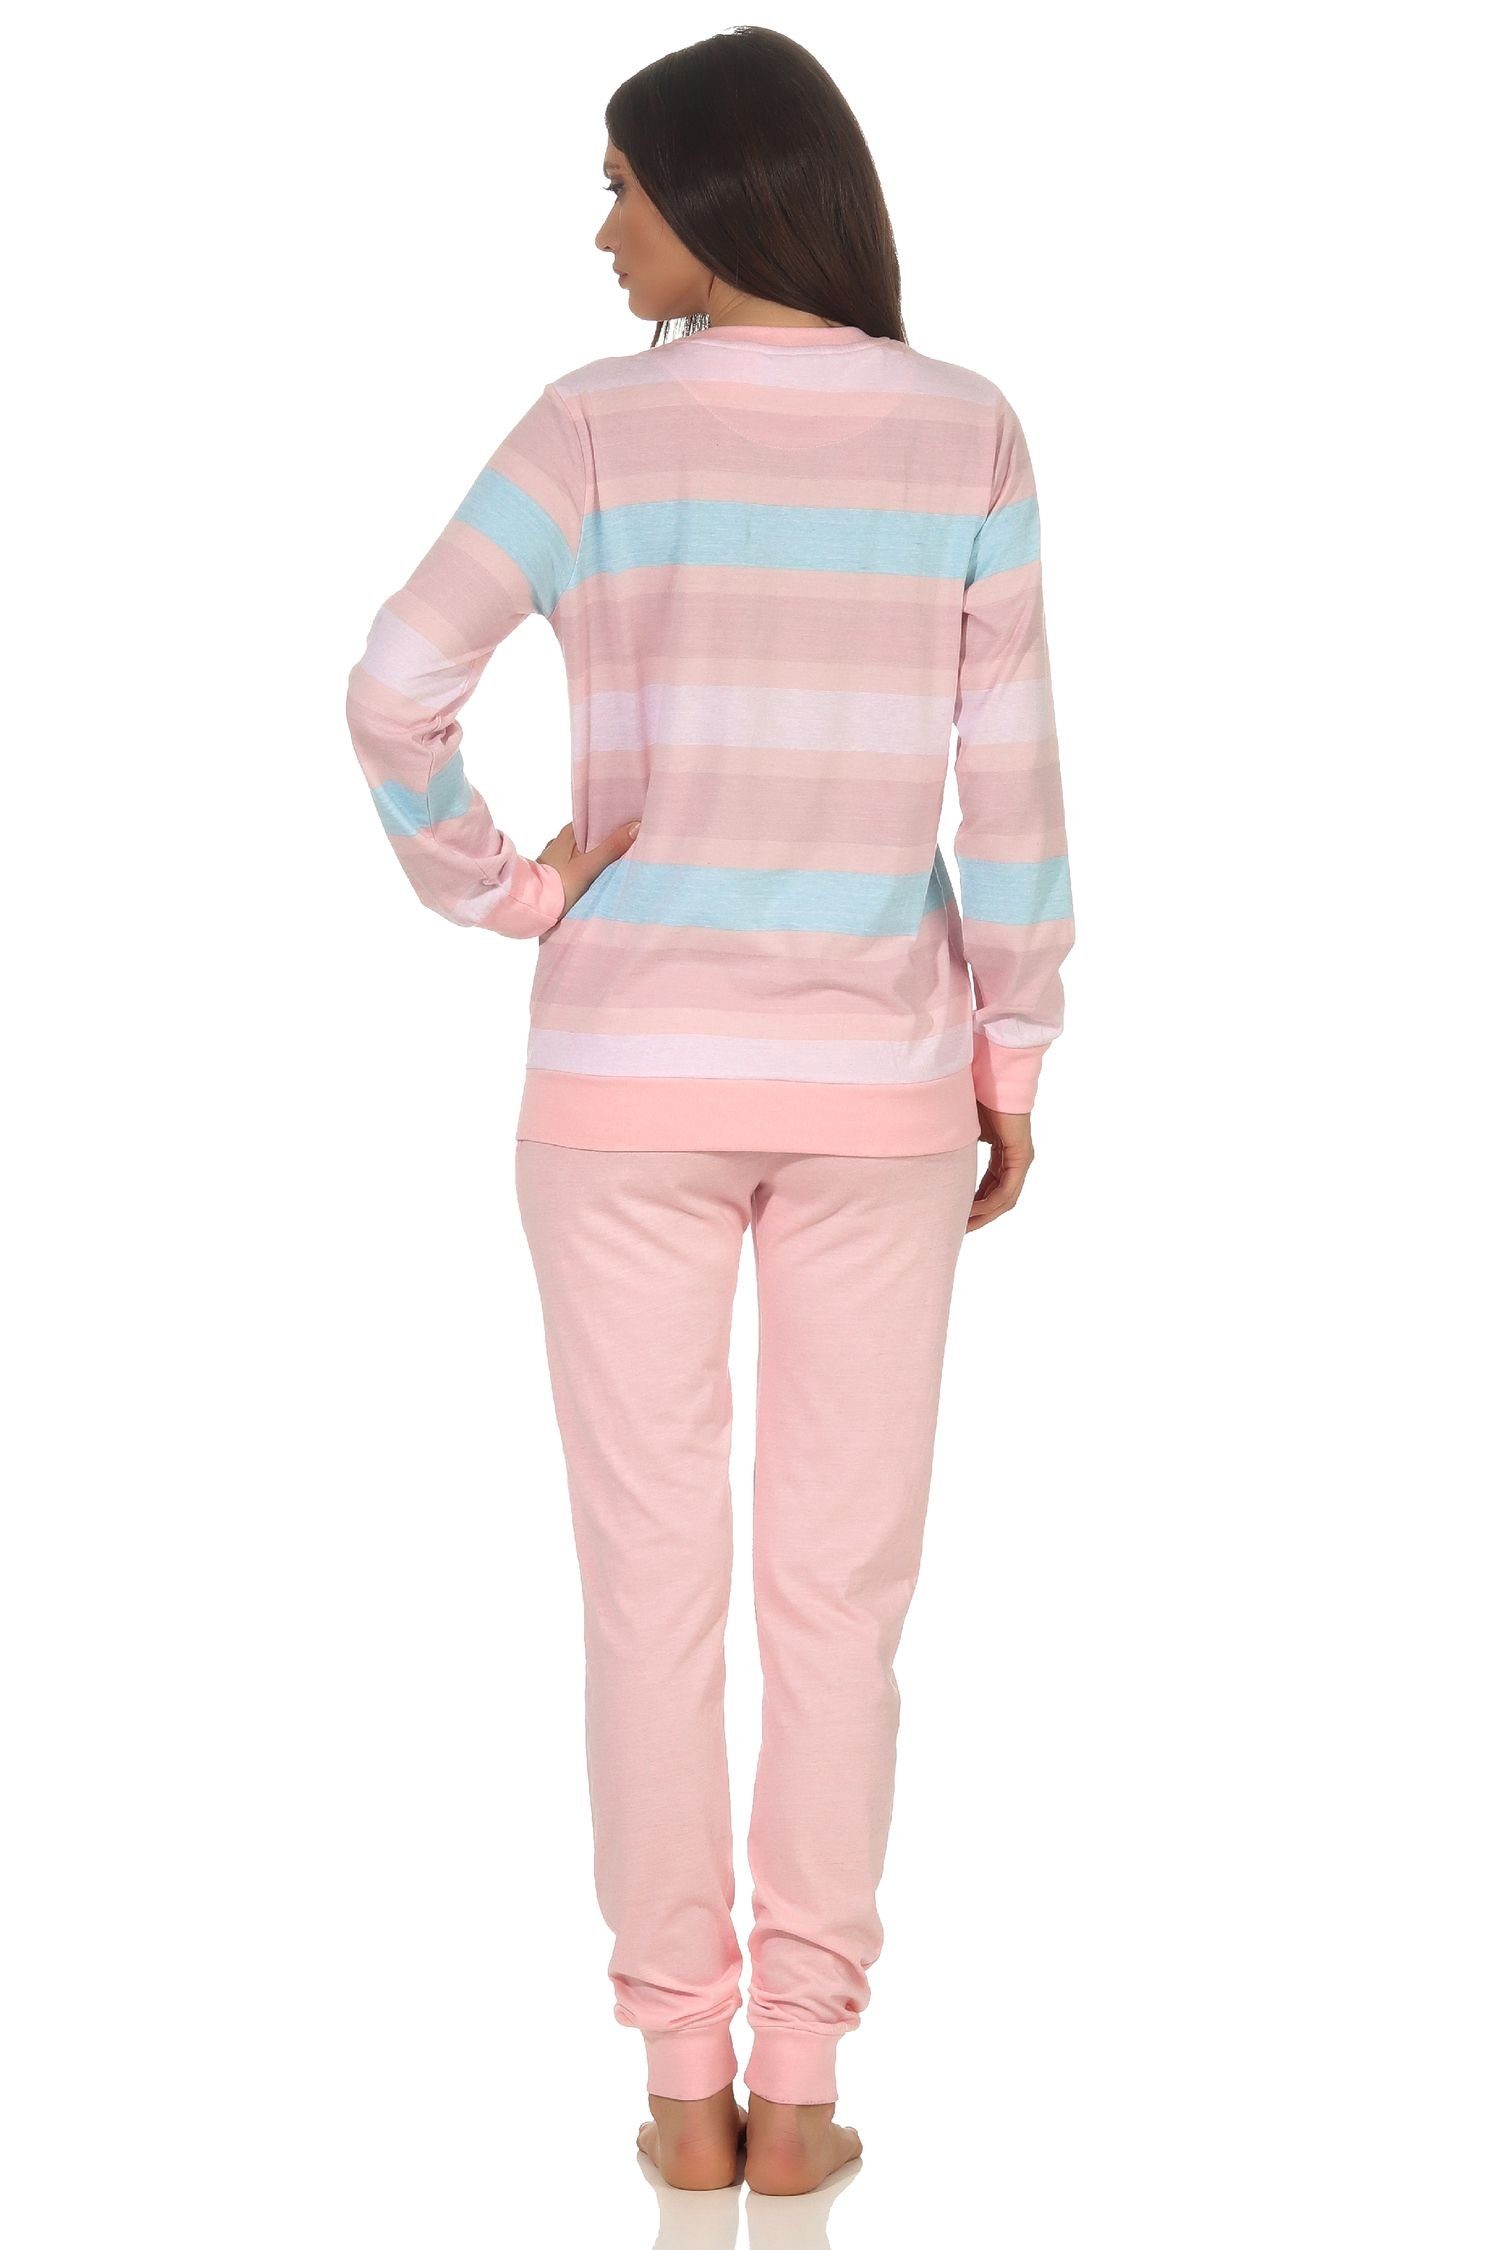 Normann Damen mit und Schlafanzug gestreiften Top Pyjama Bündchen langarm Pyjama rosa